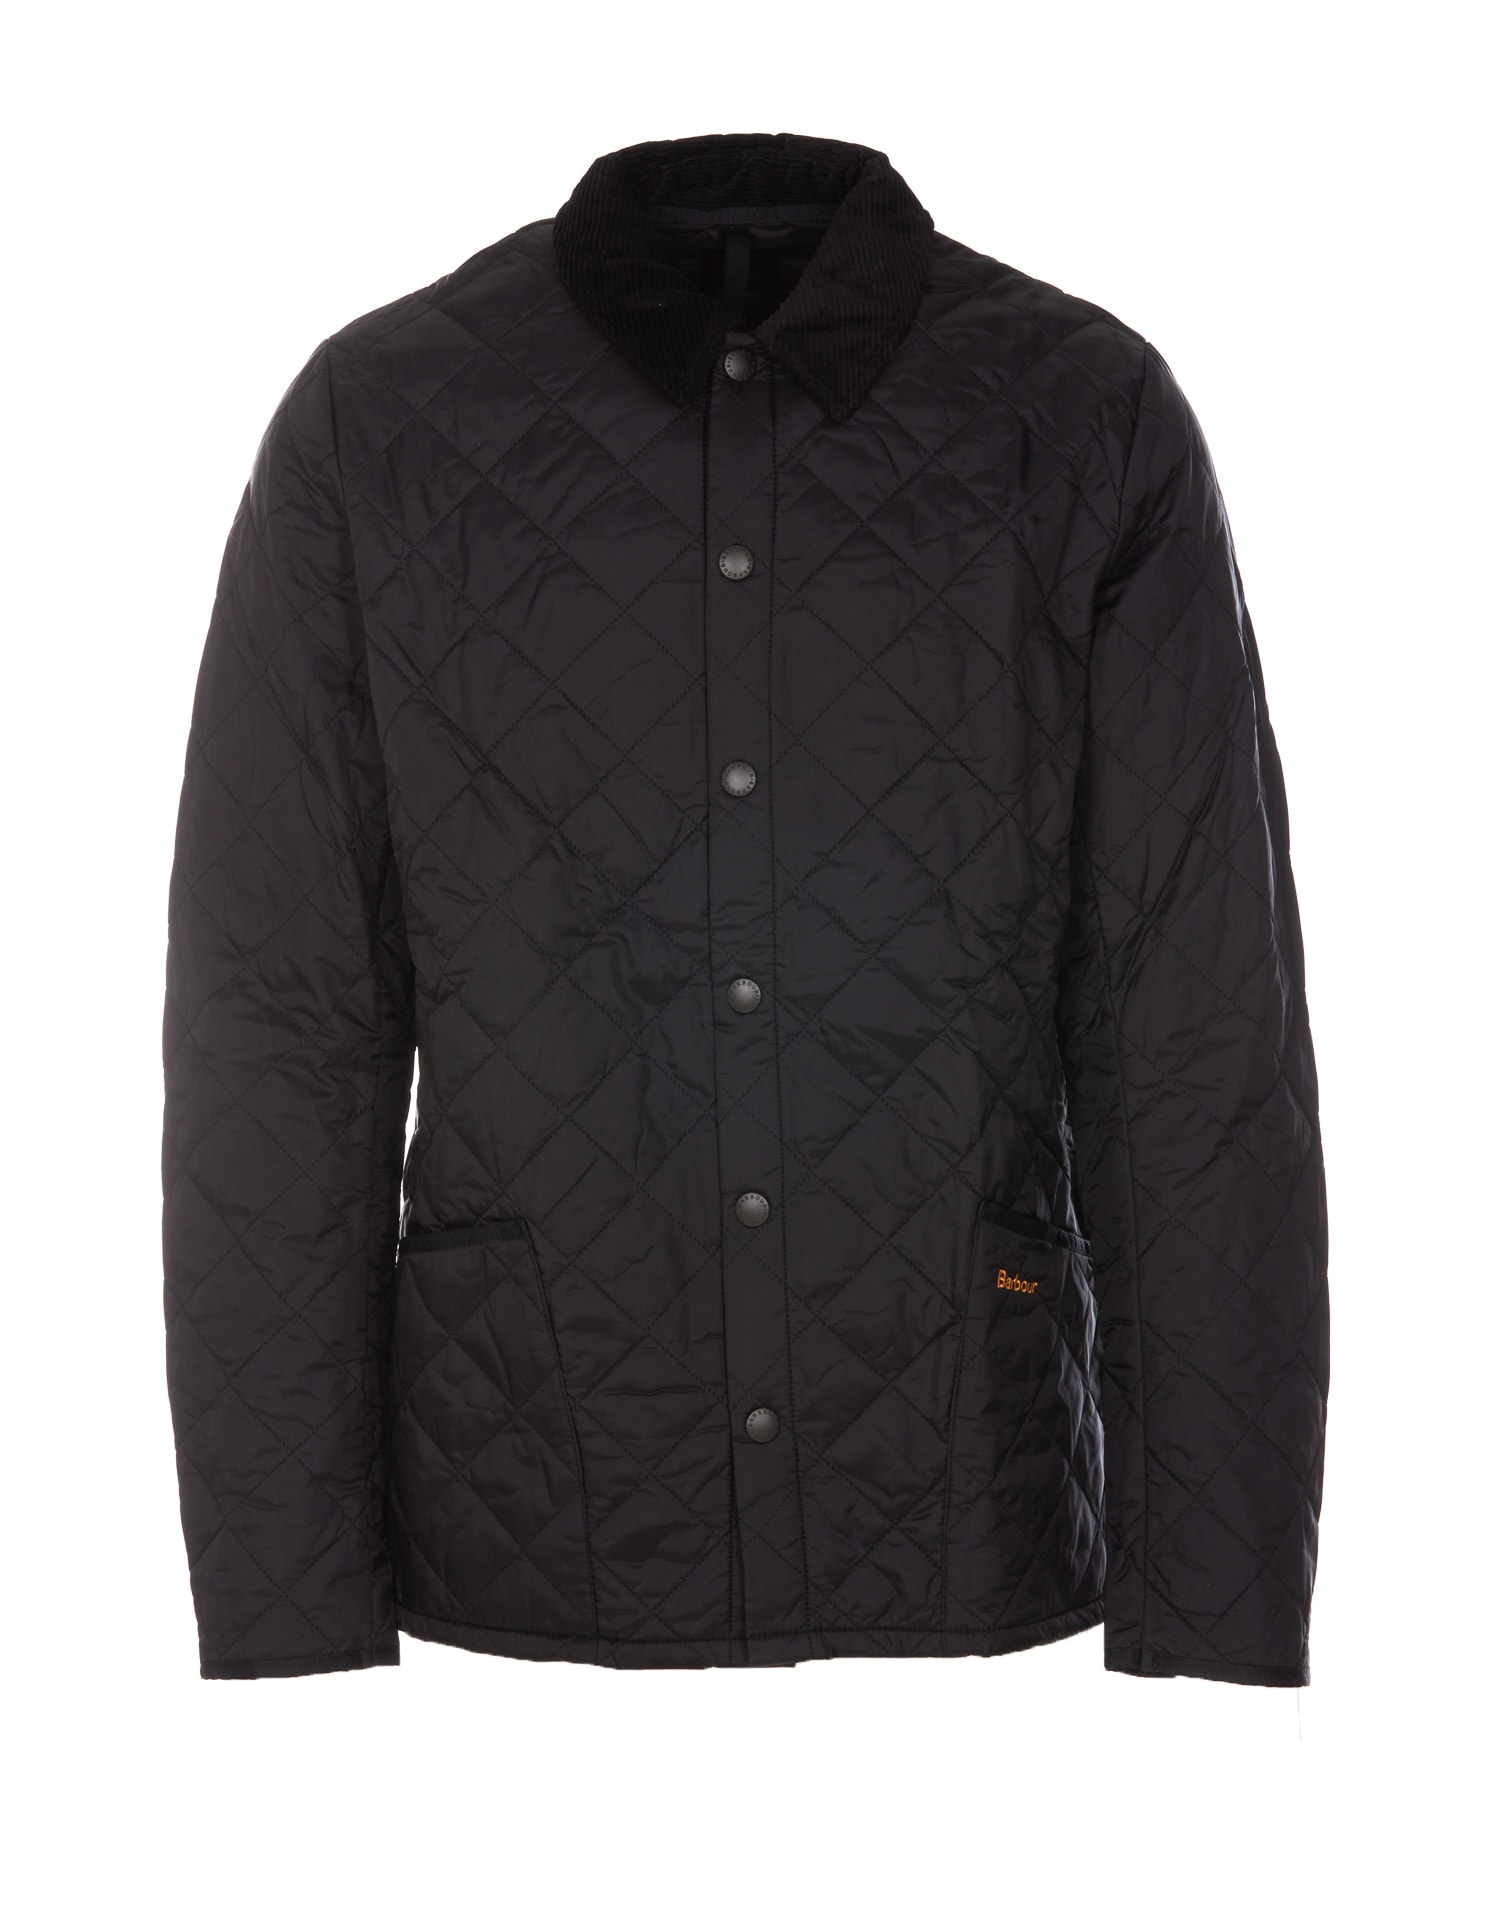 Barbour Heritage Liddesdale Quilt Jacket